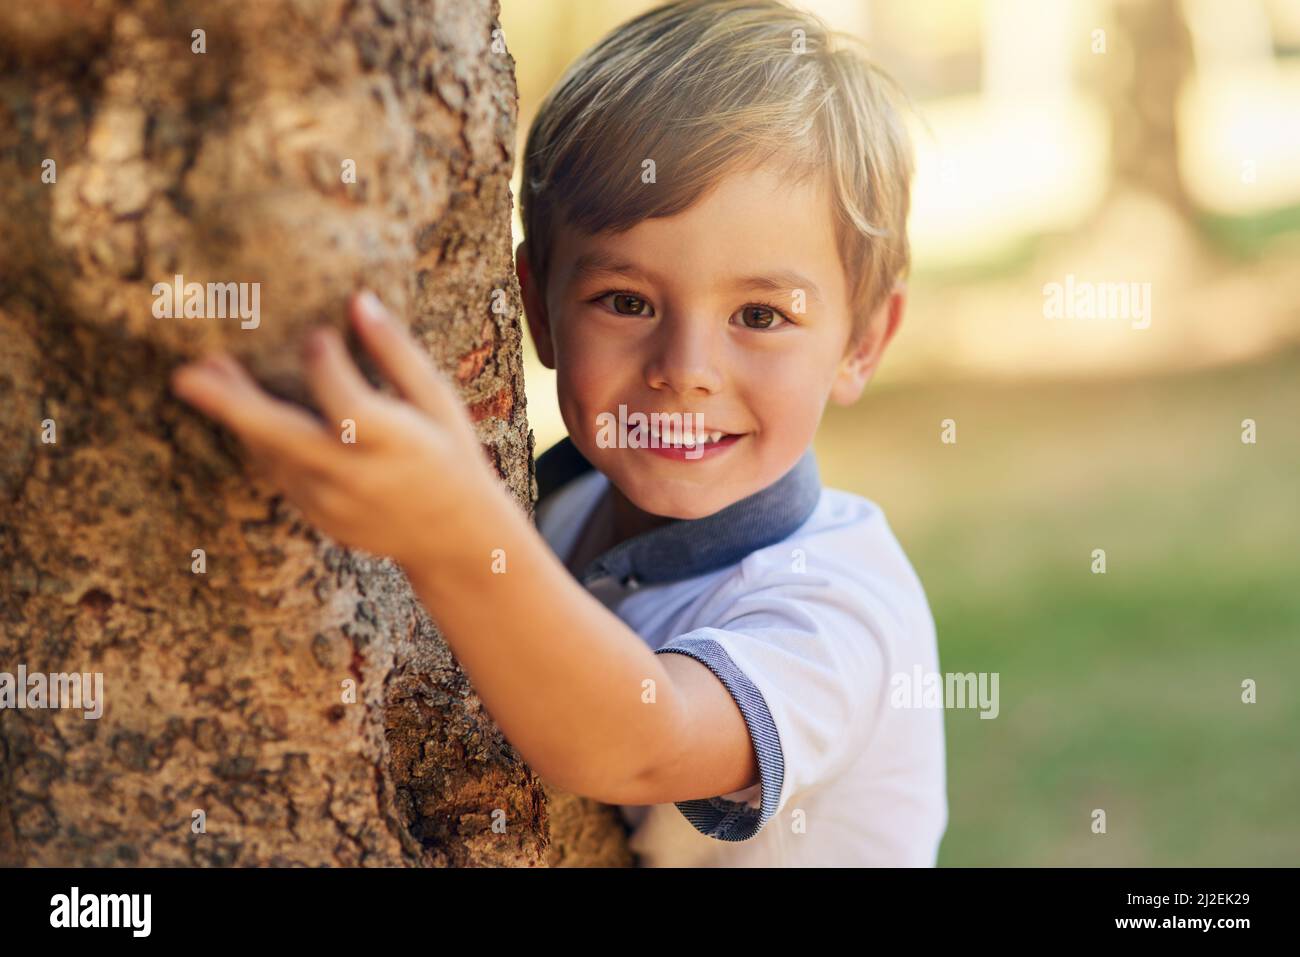 Masquer et rechercher un expert de niveau. Photo d'un petit garçon heureux jouant à côté d'un arbre dans le parc. Banque D'Images